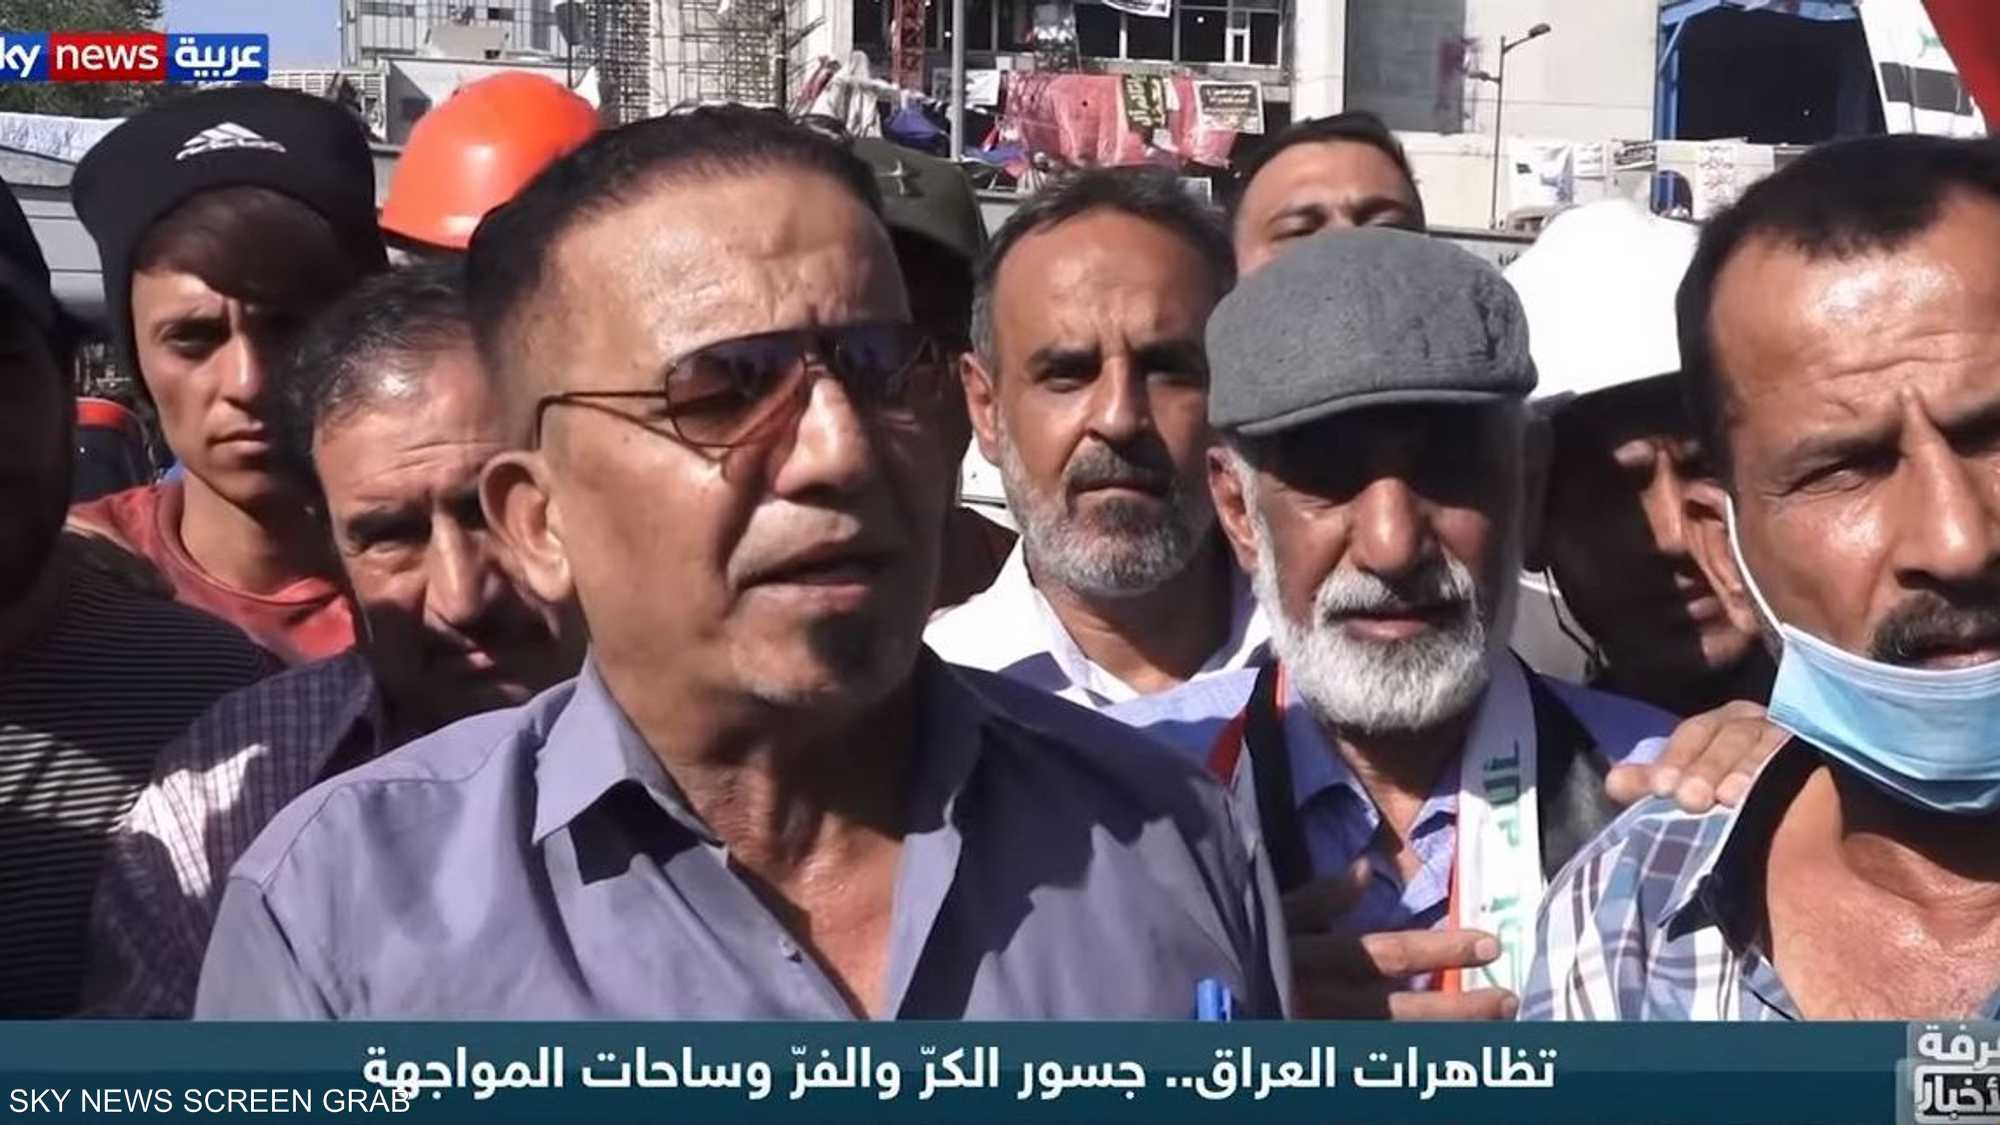 تظاهرات العراق.. جسور الكر والفر وساحات المواجهة